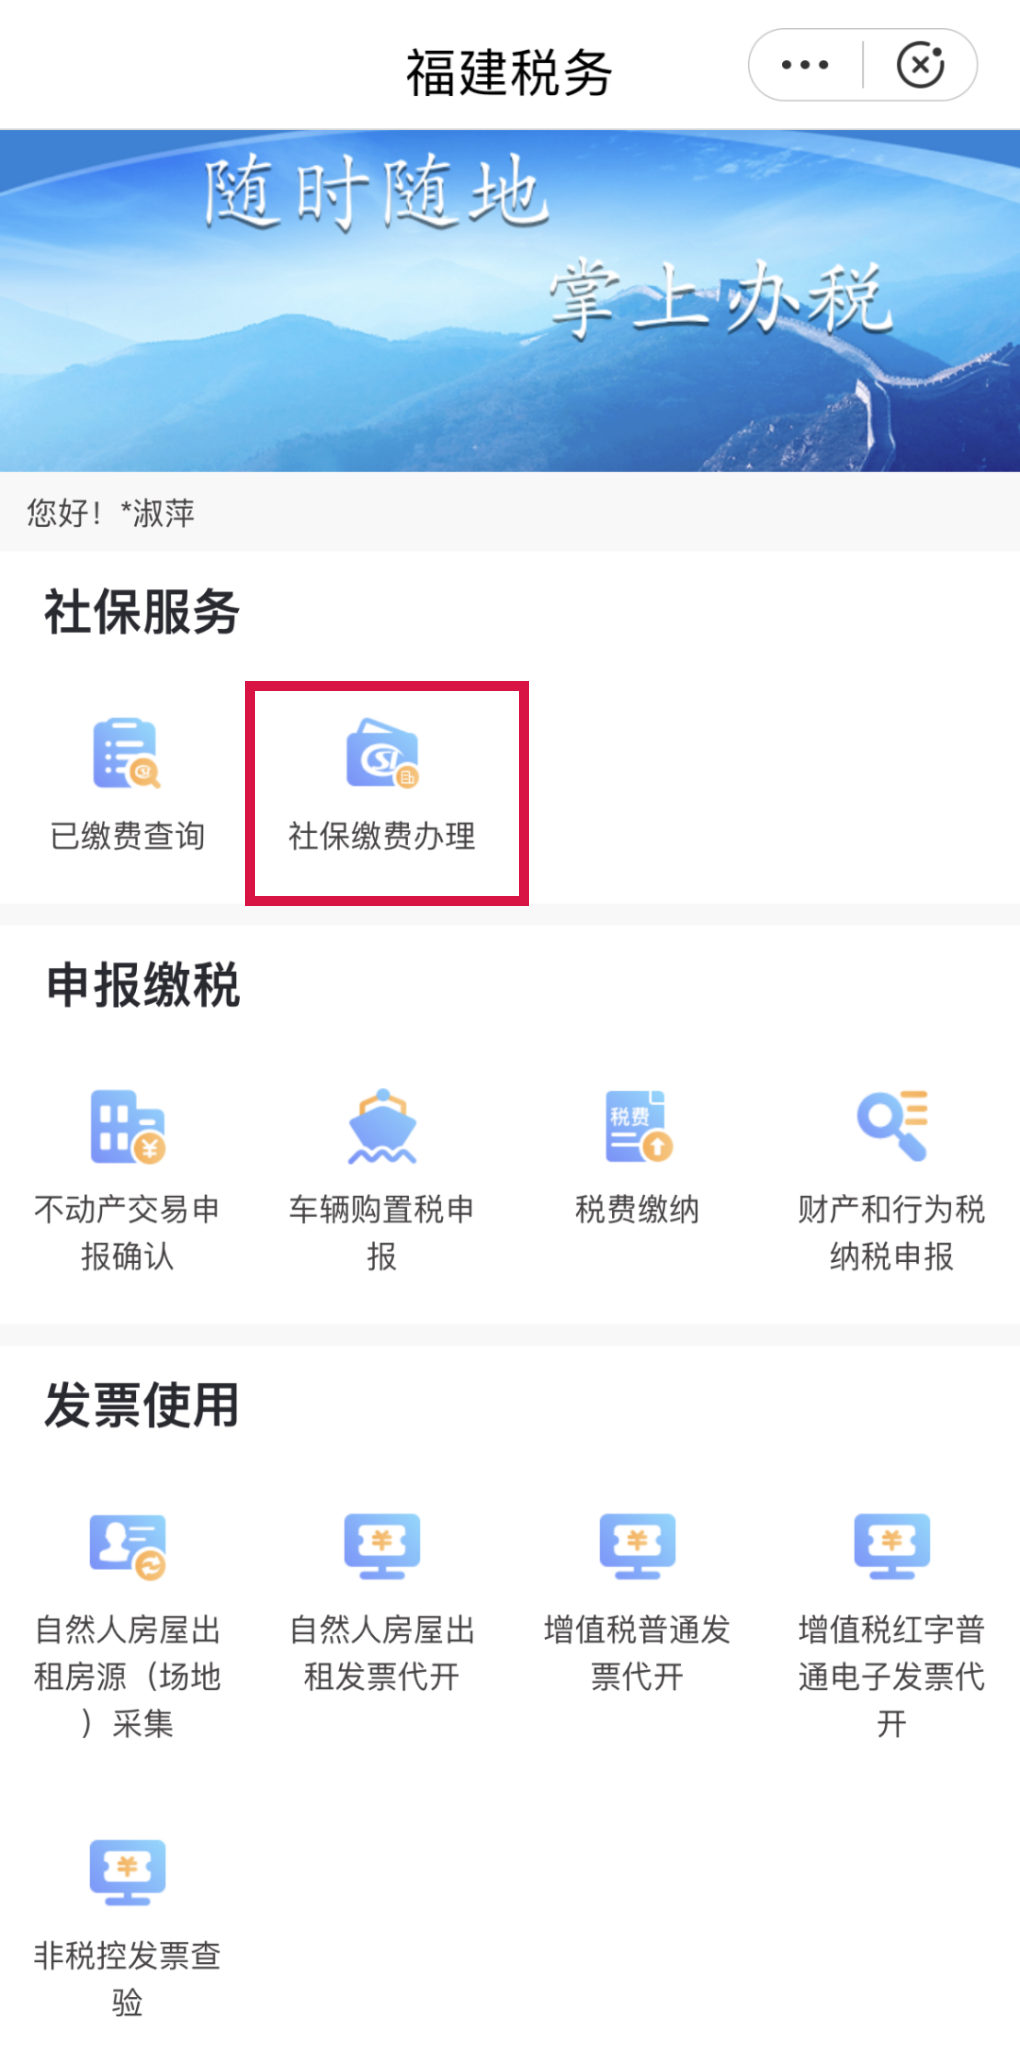 闽政通移动版软件使用指南6